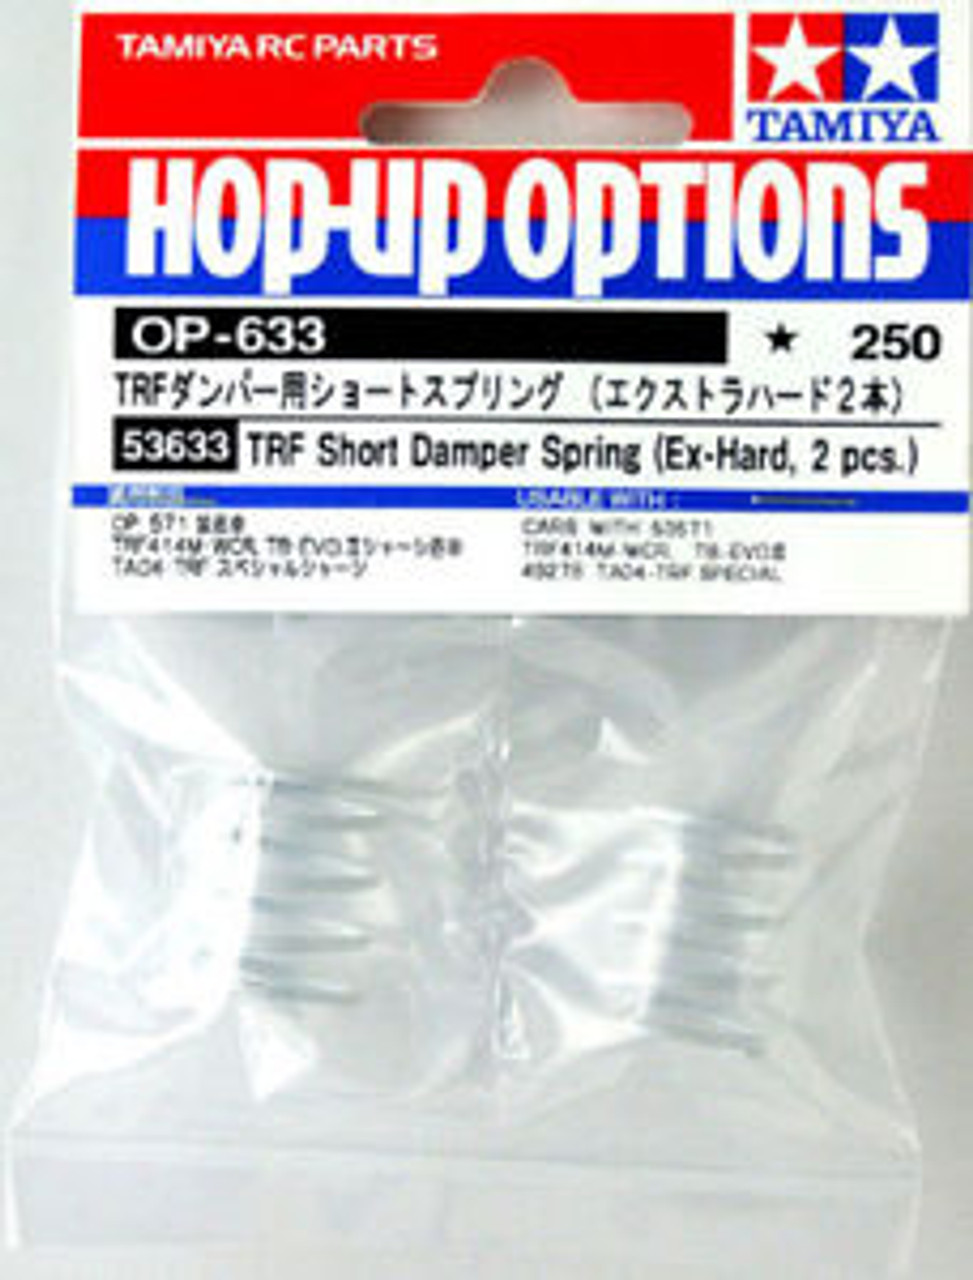 タミヤ HOP-UP OPTIONS OP-630 TRFダンパー用Sスプリング ソフト 最大84%OFFクーポン